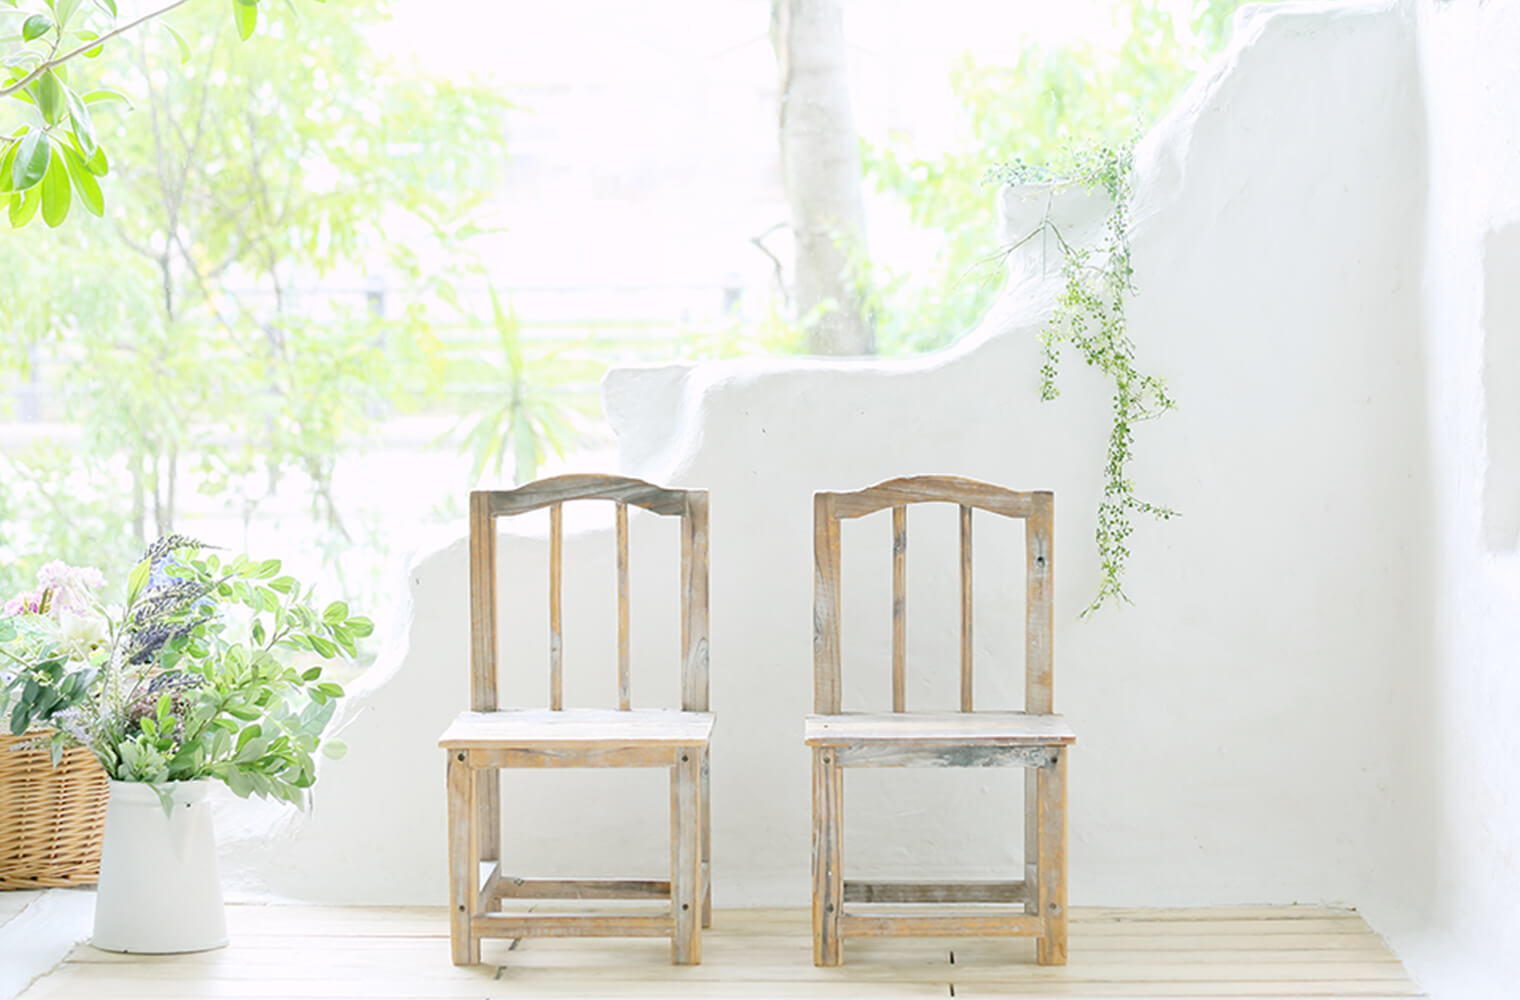 大阪フォトスタジオピエノ:木製の椅子